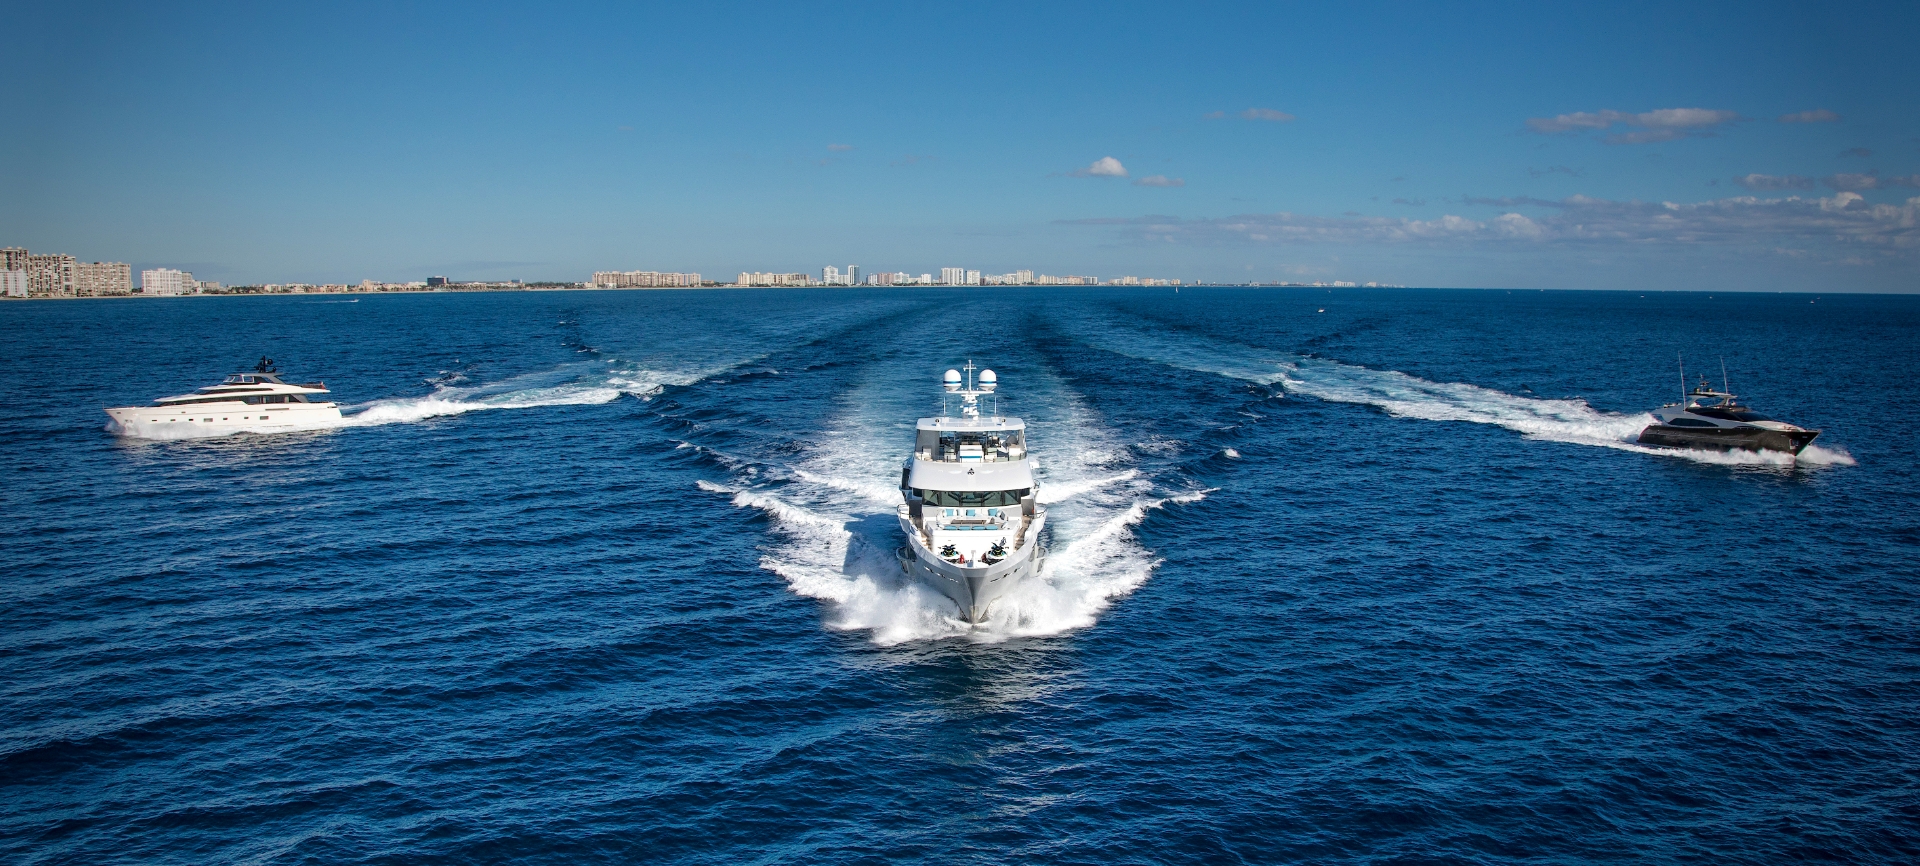 Miami Boat Show 2013 Guide